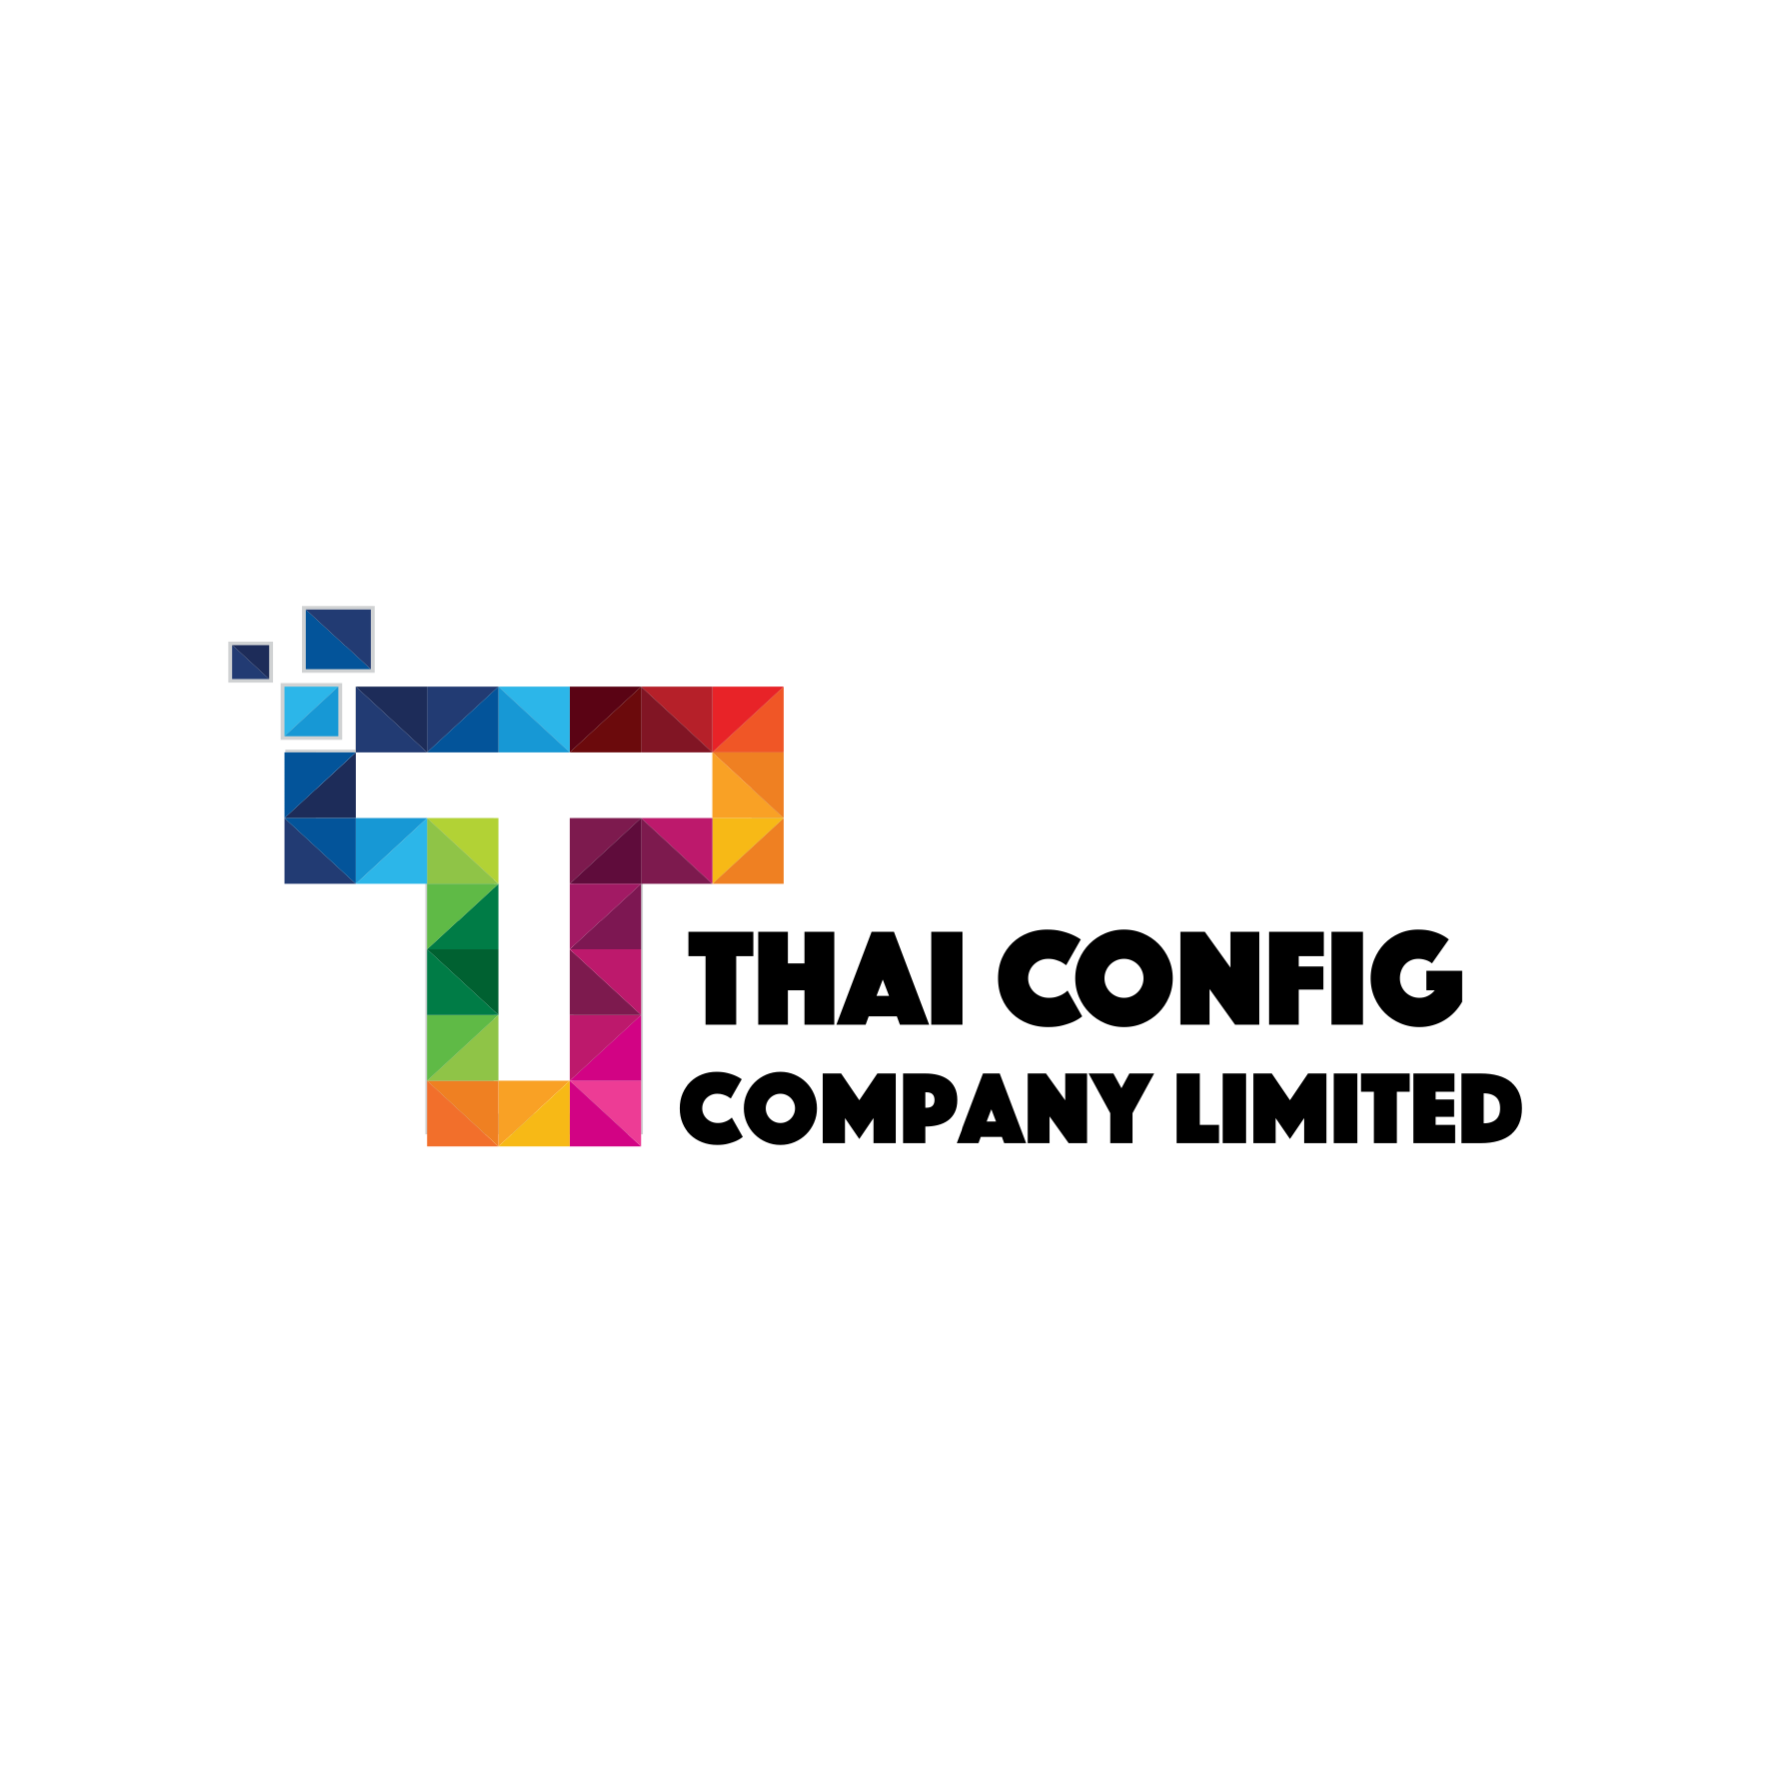 Thai Confog บริษัทพัฒนาซอฟต์แวร์ รับทำเว็บไซต์ รับทำแอพพลิเคชั่น รับวางระบบ Server อีเมล์บริษัท เว็บไซต์บริษัท ทำระบบตามความต้องการ